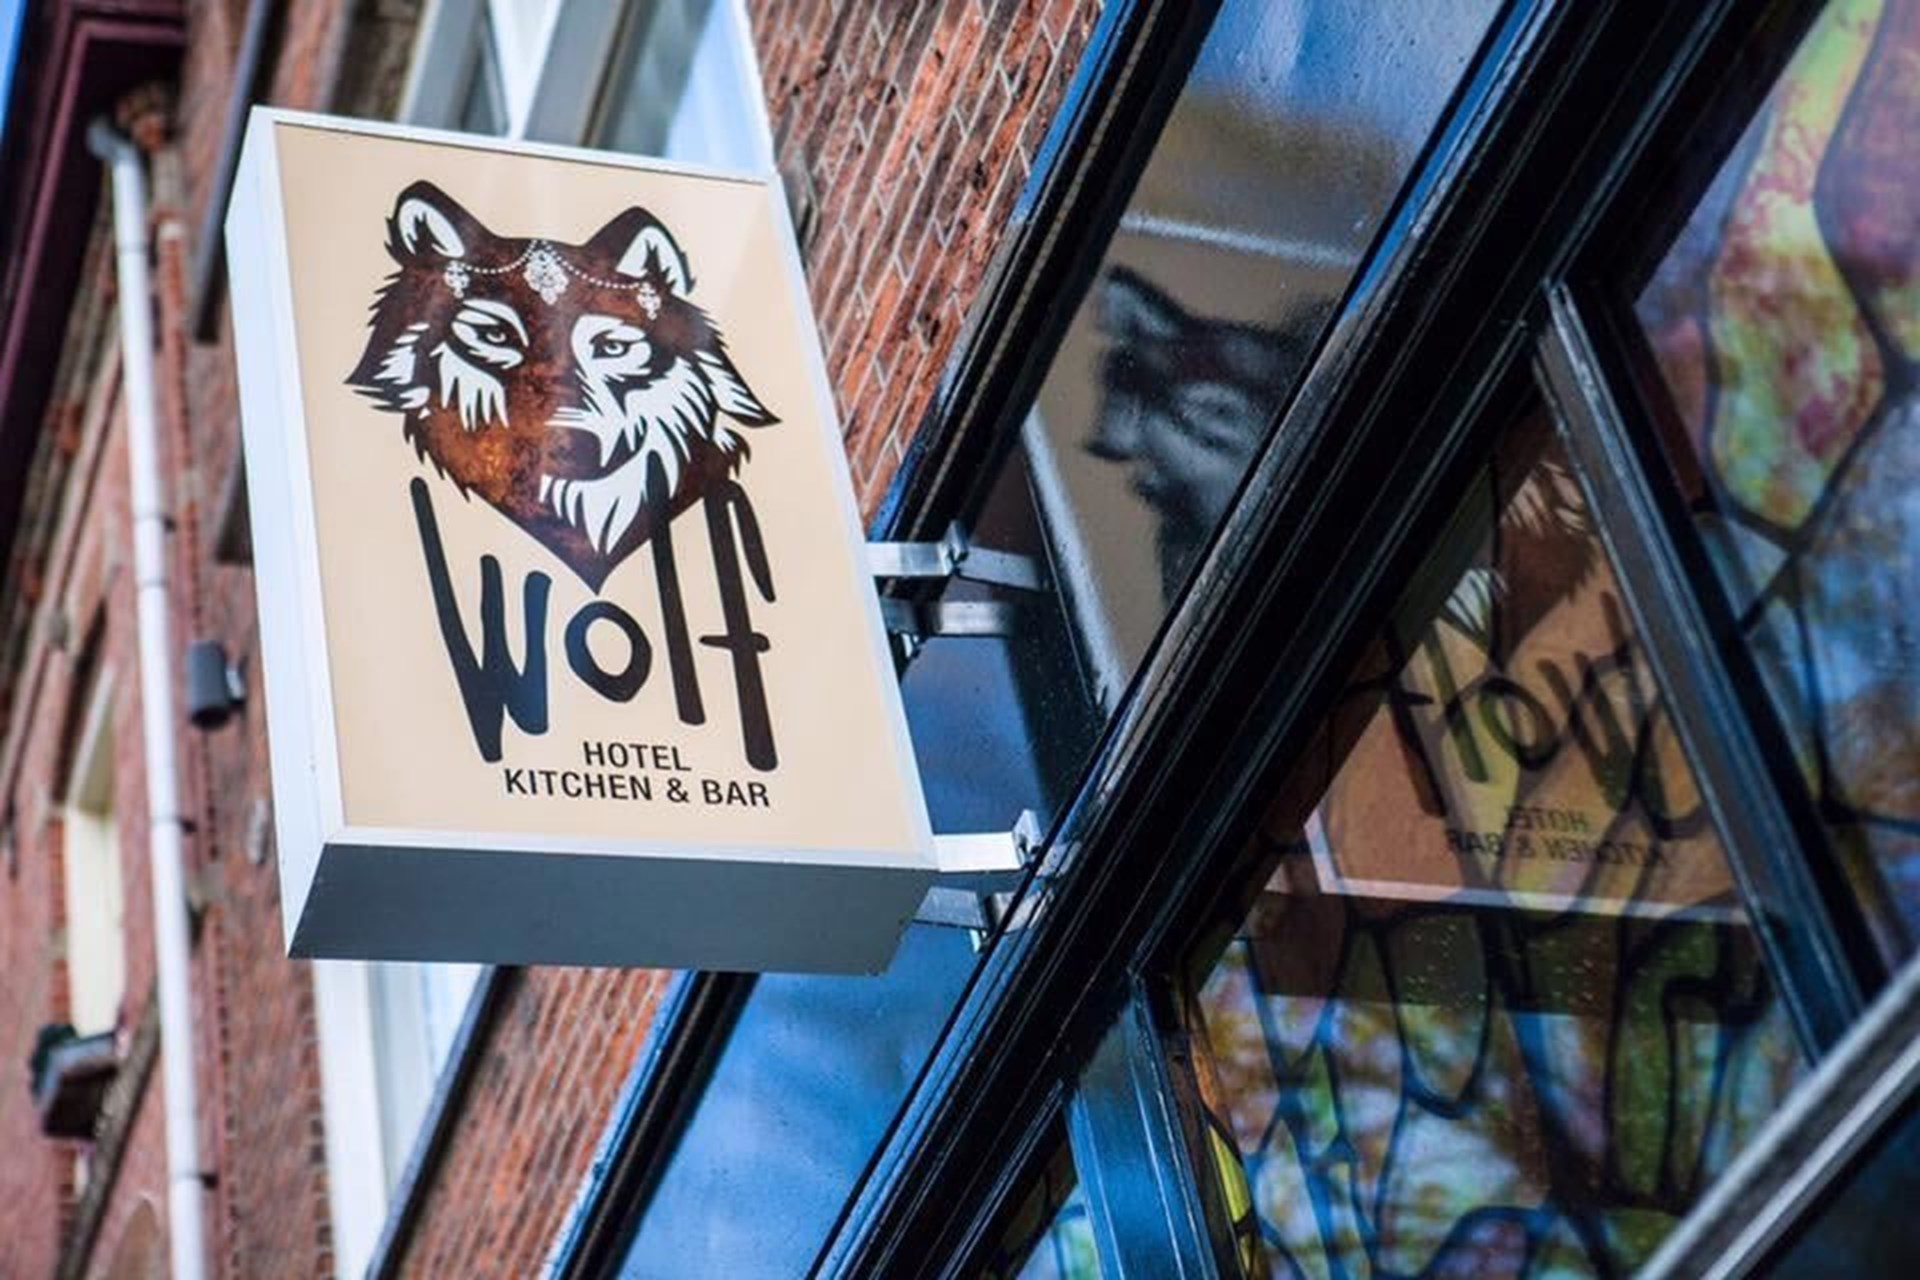 Wolf Hotel Kitchen & Bar banner